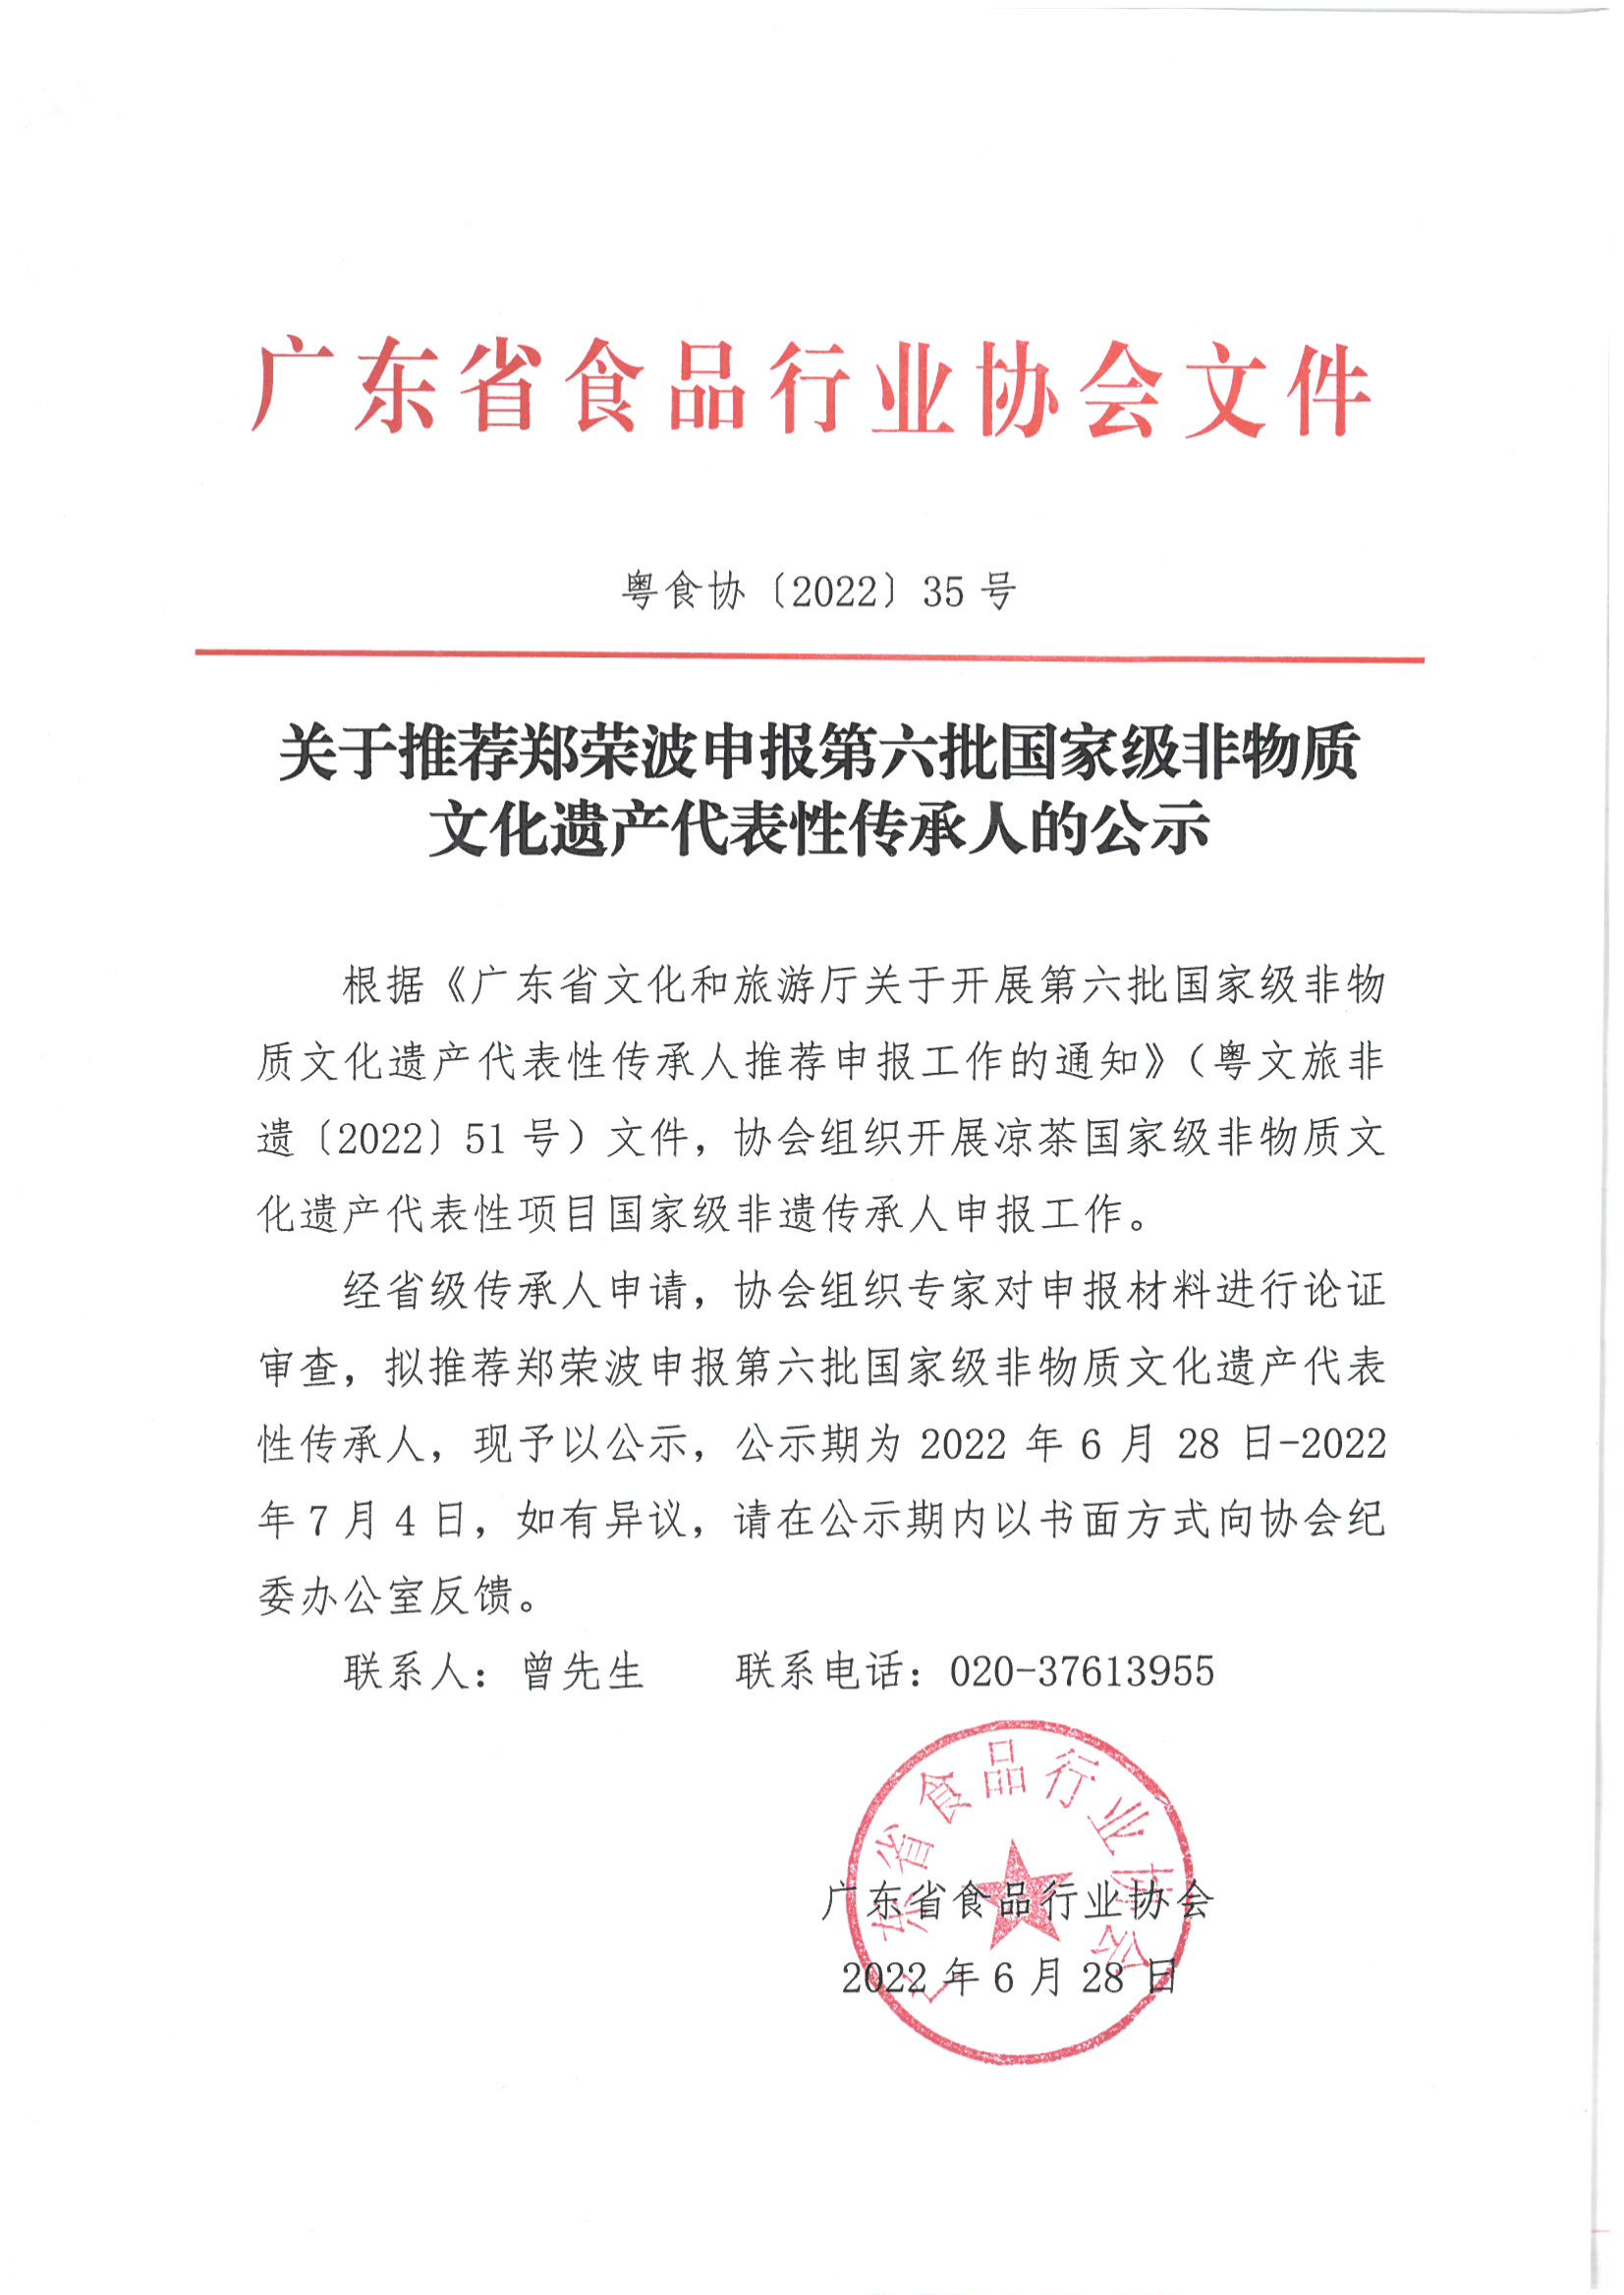 关于推荐郑荣波申报第六批国家级非物质文化遗产代表性传承人的公示